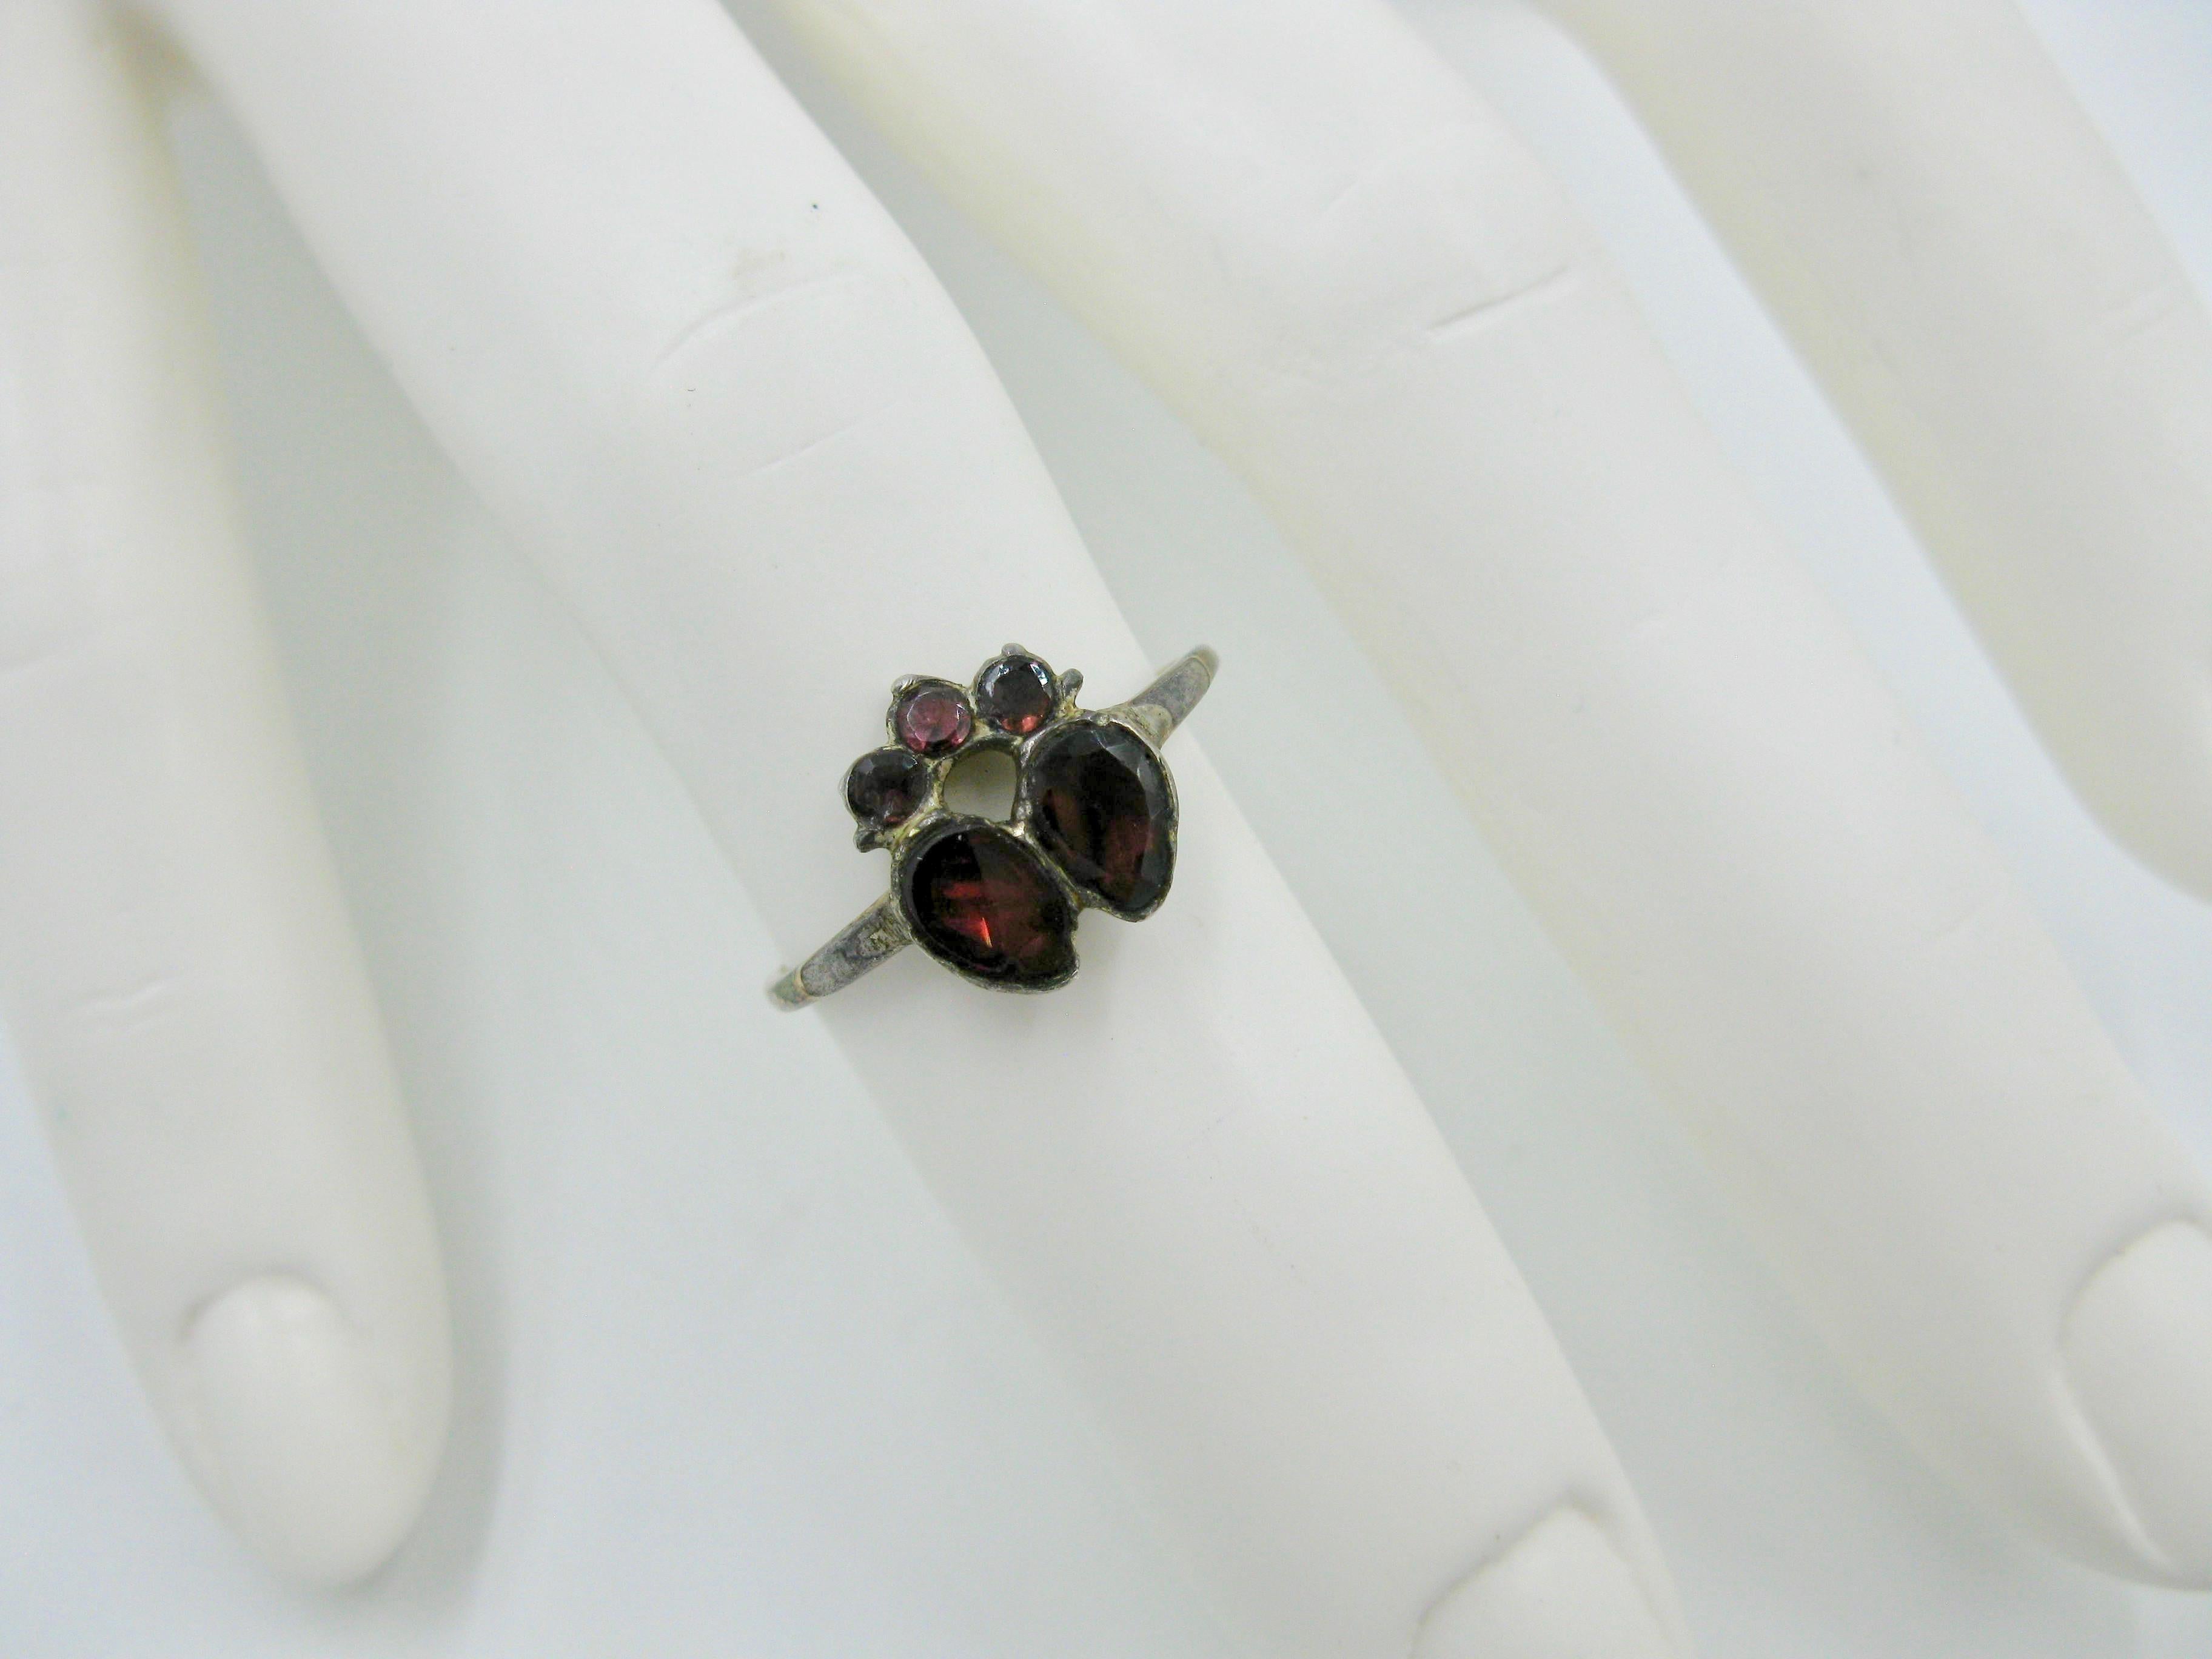 Dies ist ein sehr früher georgianischer Ring mit flach geschliffenen Almandingranaten in einem gekrönten Doppelherzring aus der Zeit um 1700.  Ein Schmuckstück in Museumsqualität aus der Sammlung von Edith Weber.  Das Doppelherzmotiv symbolisiert